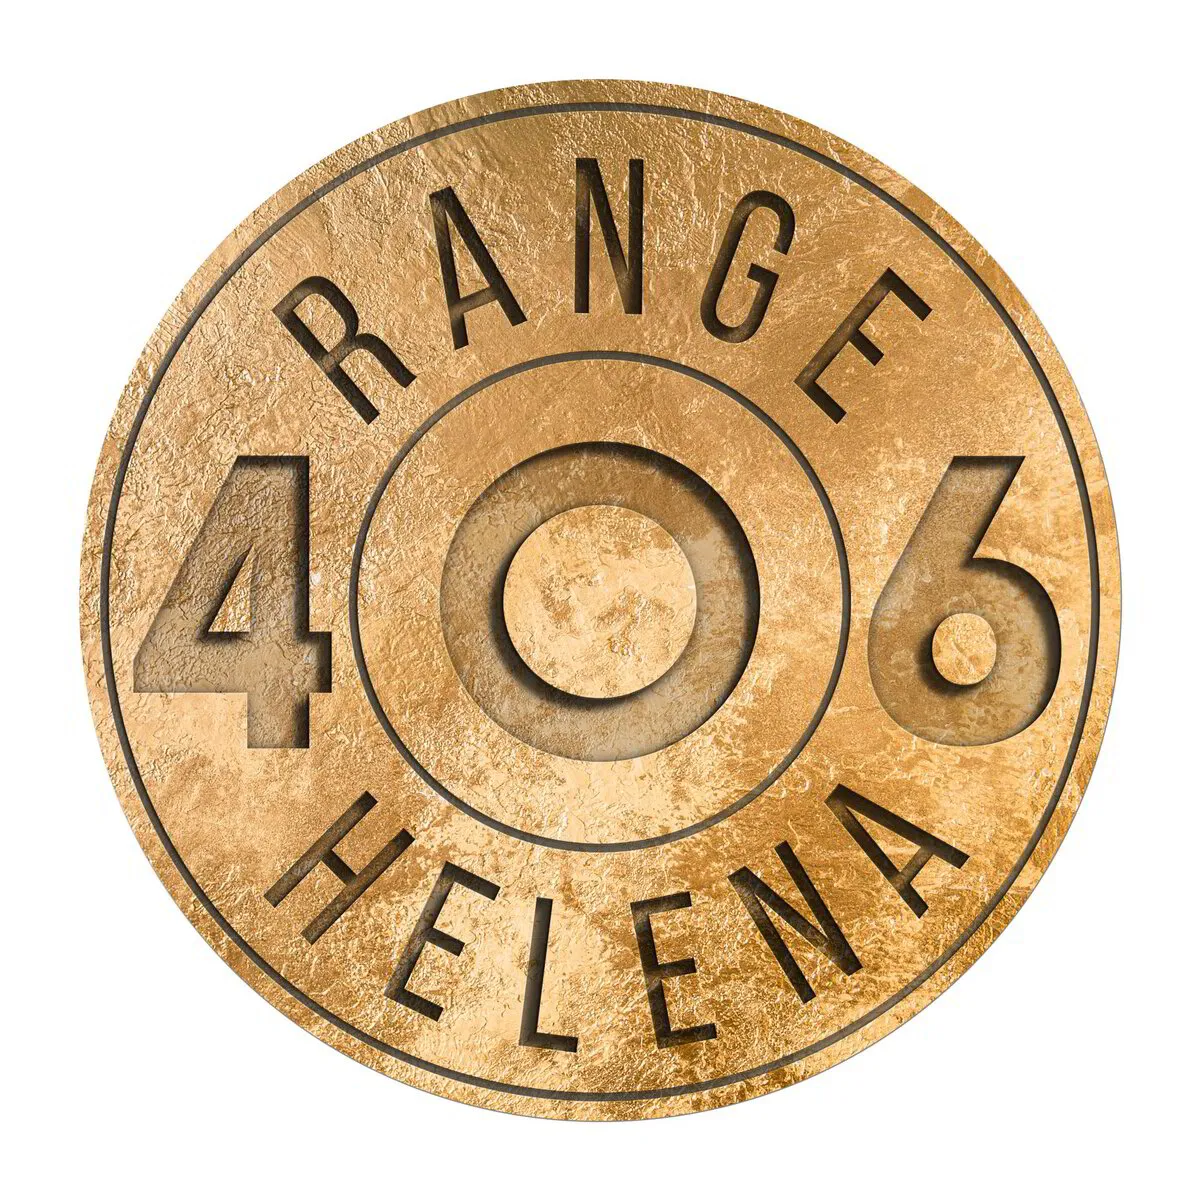 Range 406